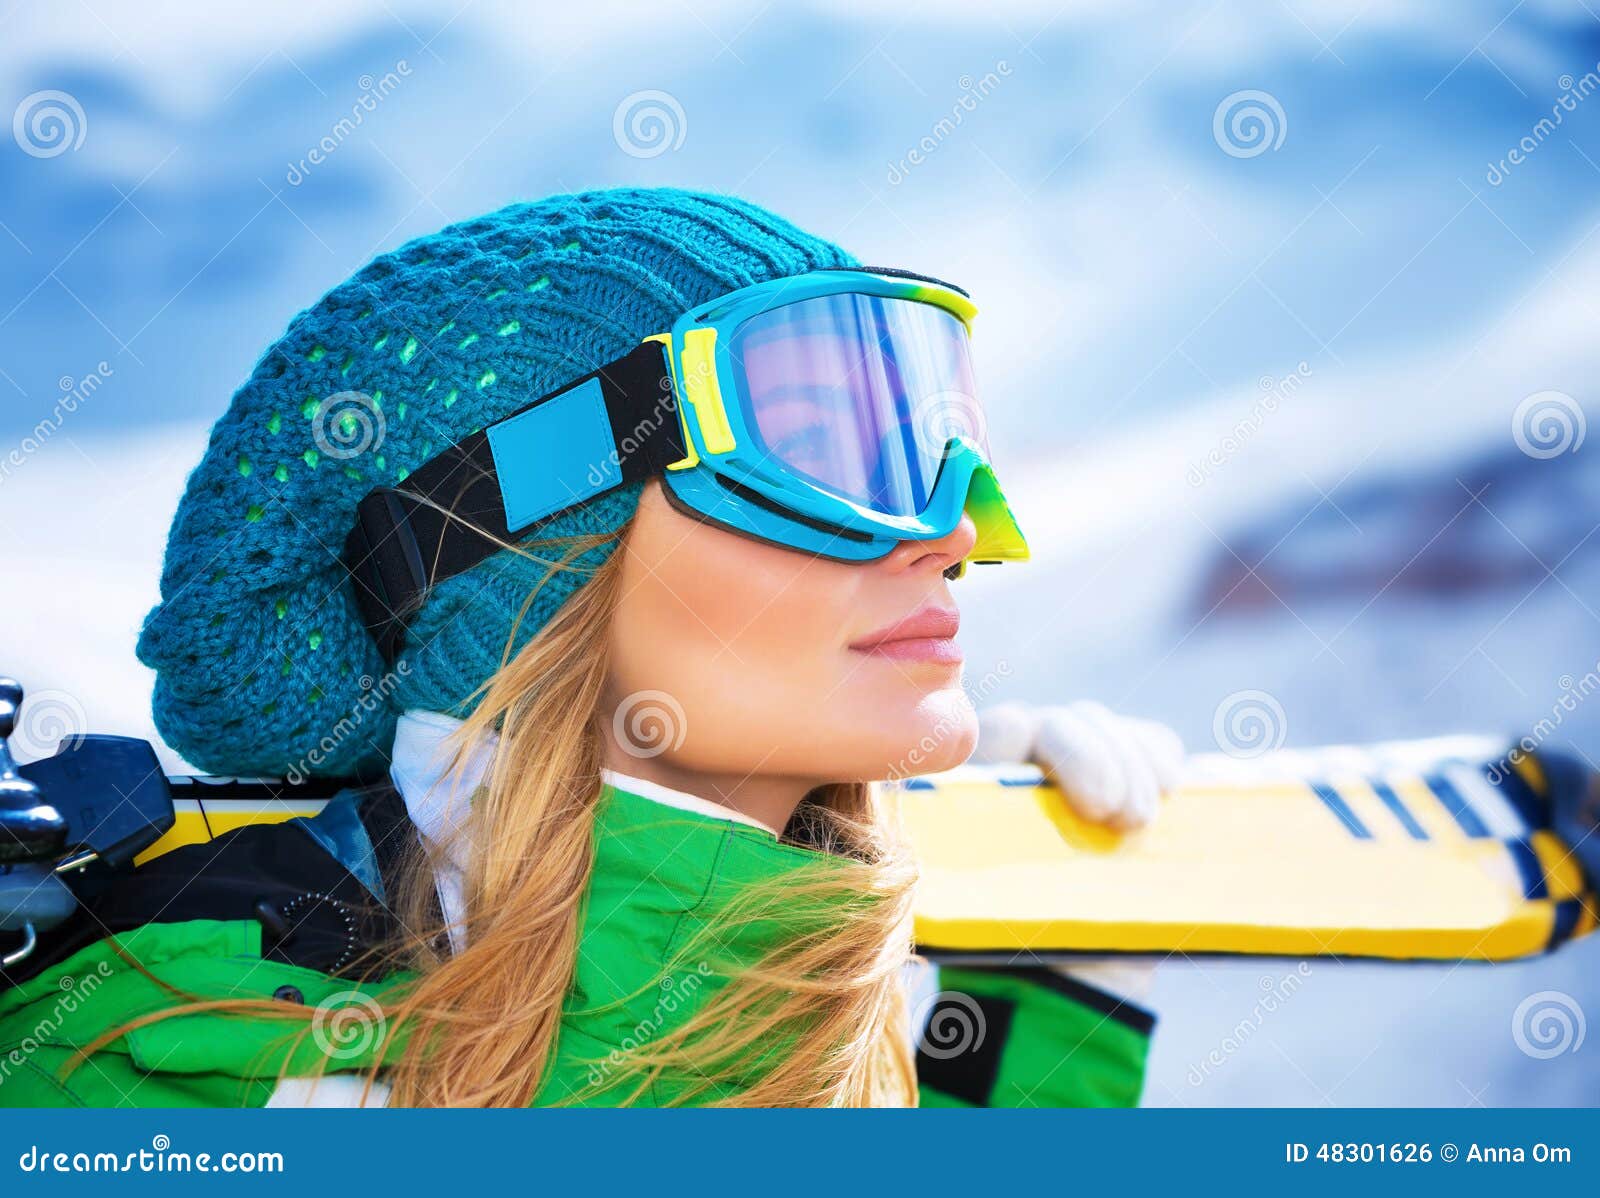 Retrato hermoso de la muchacha del esquiador. Retrato del primer de la máscara de la muchacha hermosa del esquiador y del esquí el sostenerse que llevan, disfrutando de vacaciones de invierno